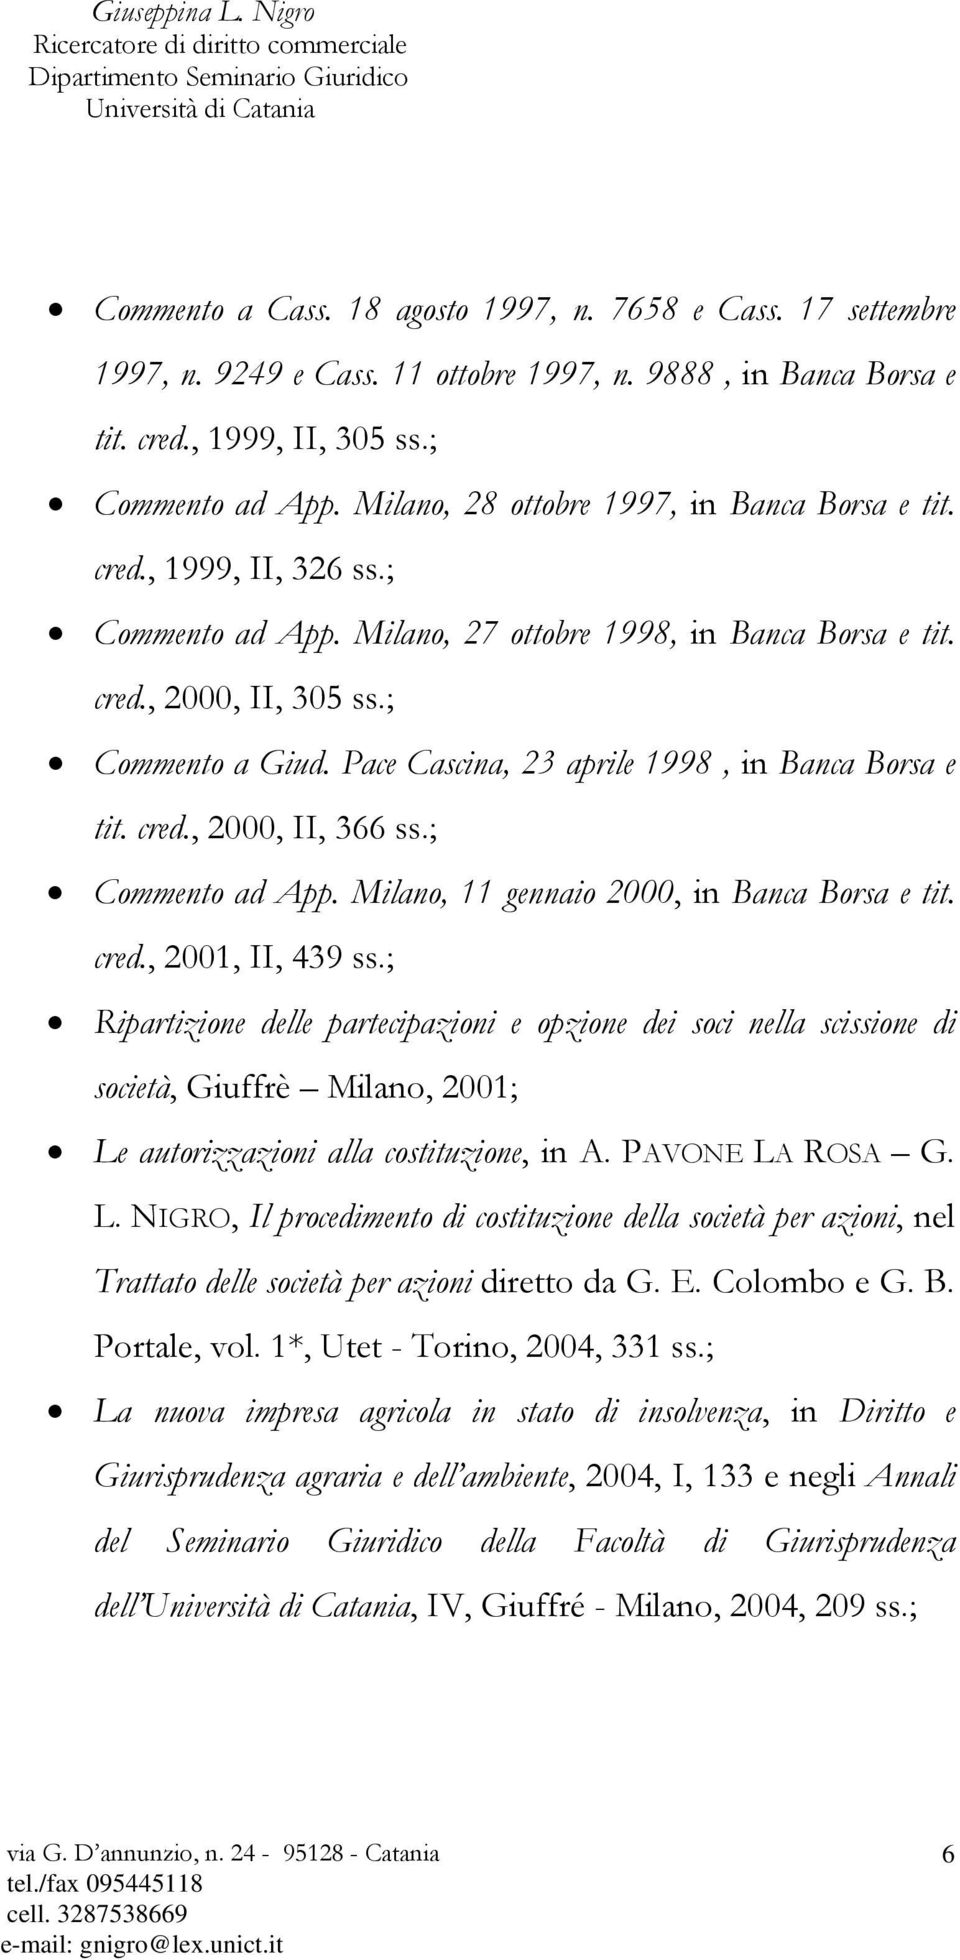 Pace Cascina, 23 aprile 1998, in Banca Borsa e tit. cred., 2000, II, 366 ss.; Commento ad App. Milano, 11 gennaio 2000, in Banca Borsa e tit. cred., 2001, II, 439 ss.